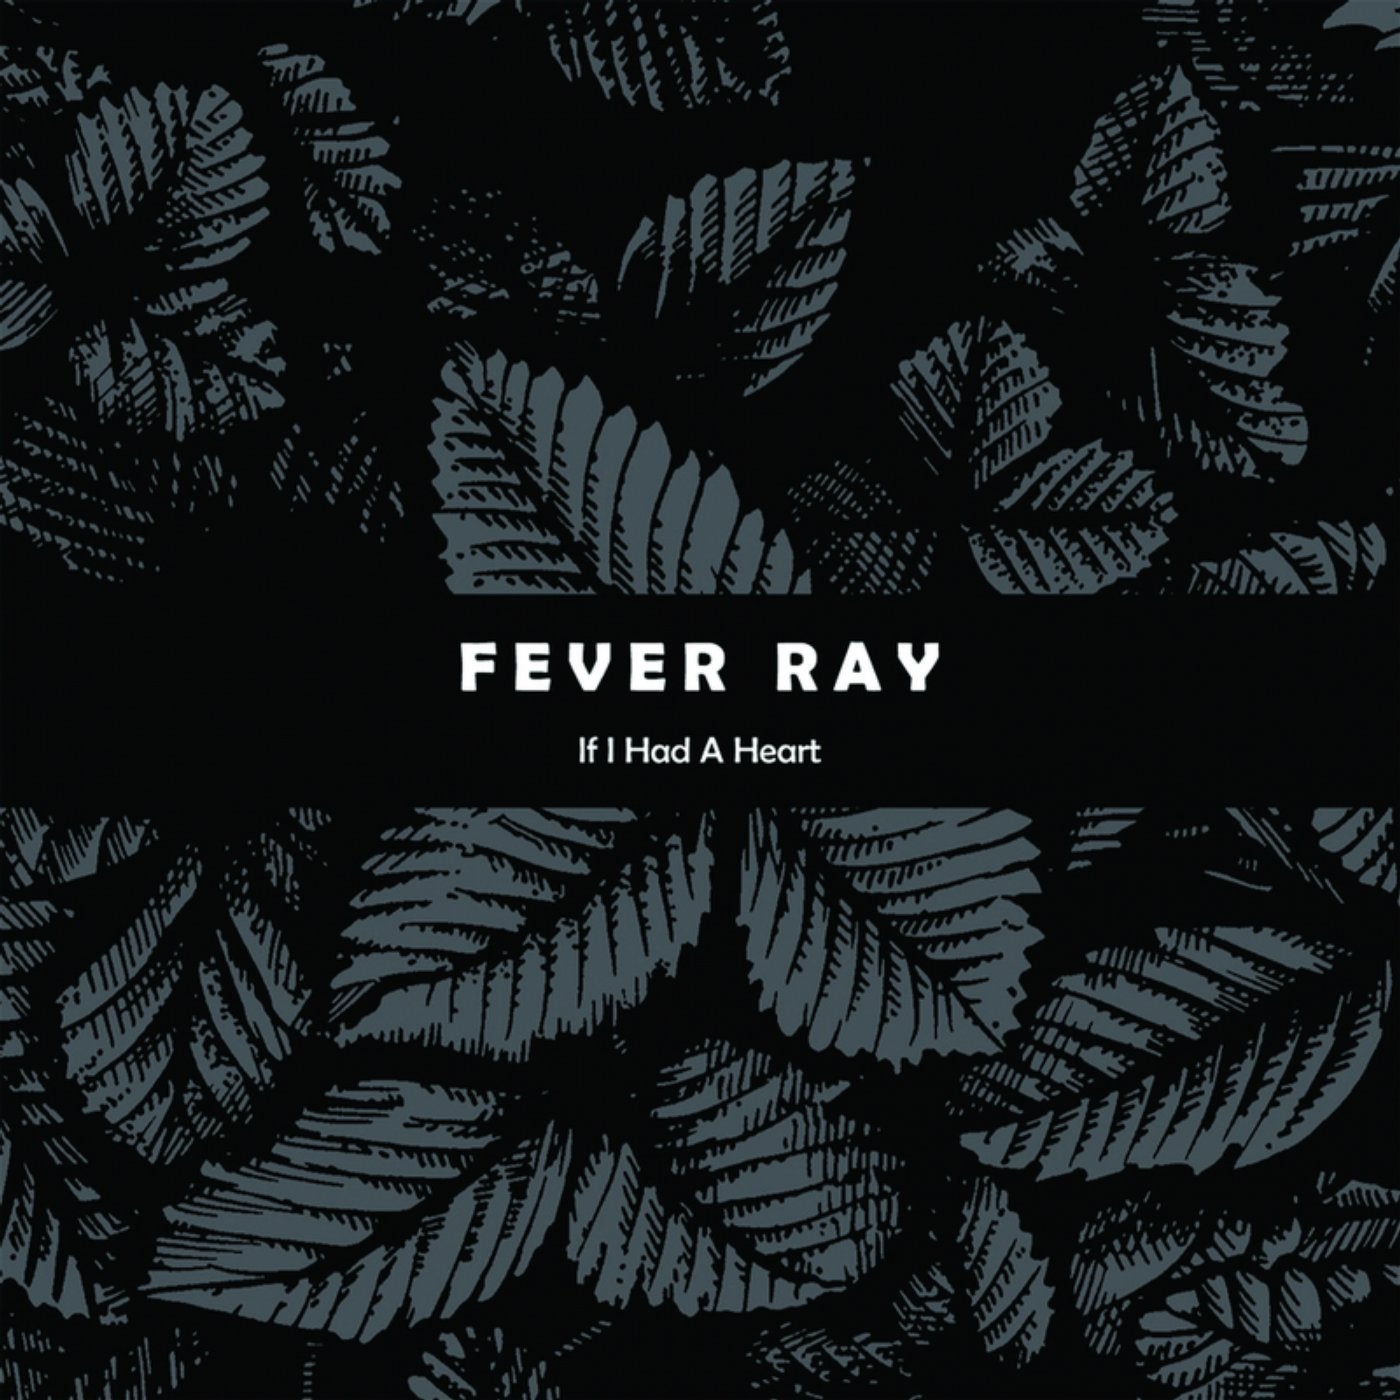 If I Had A Heart (Original Mix) от Fever Ray на Beatport.